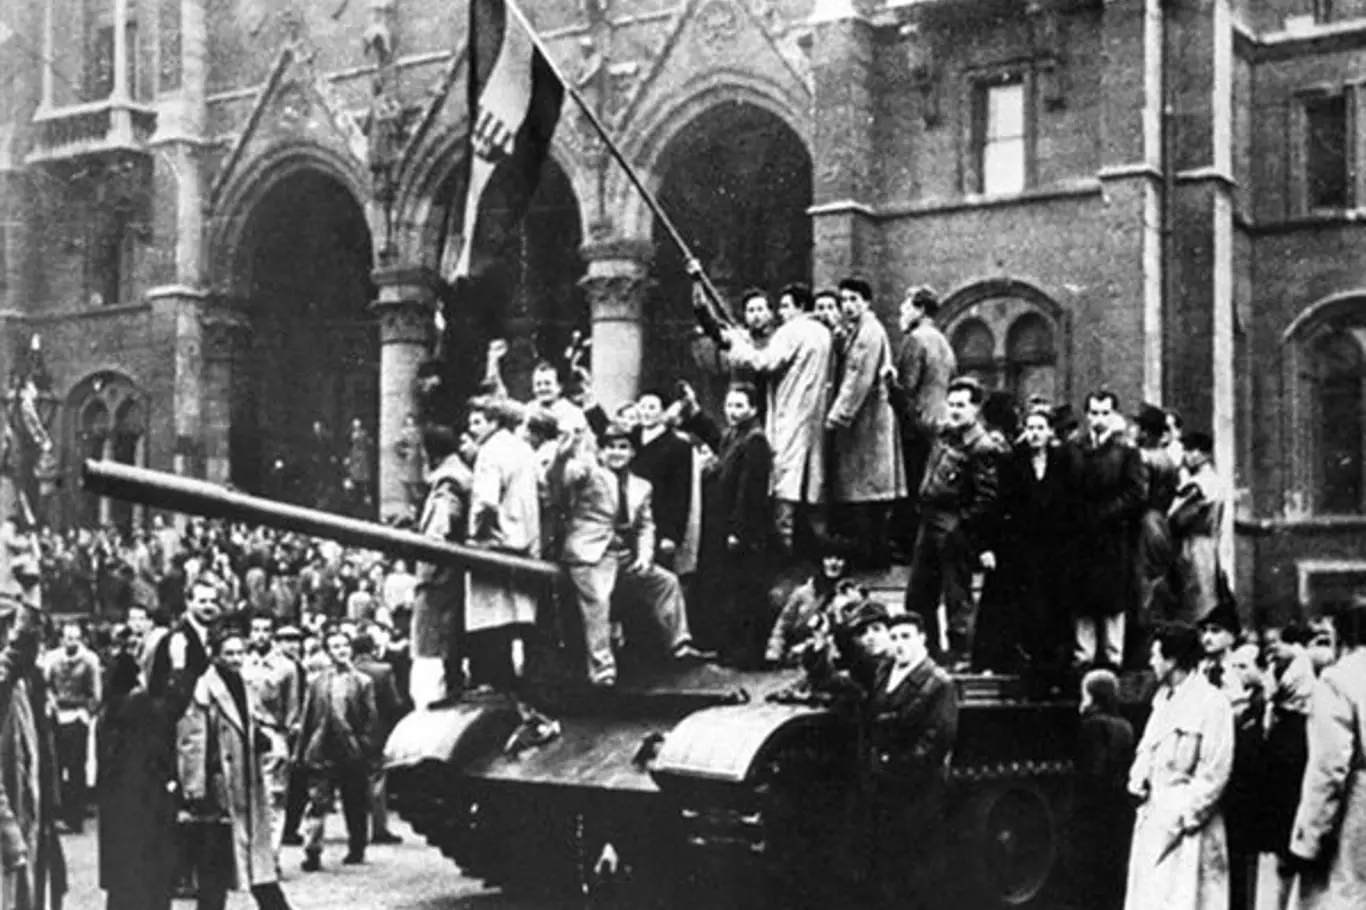 Symbolem maďarské revoluce byla národní vlajka s tradičním královským znakem, popřípadě s vyřízlým znakem komunistickým